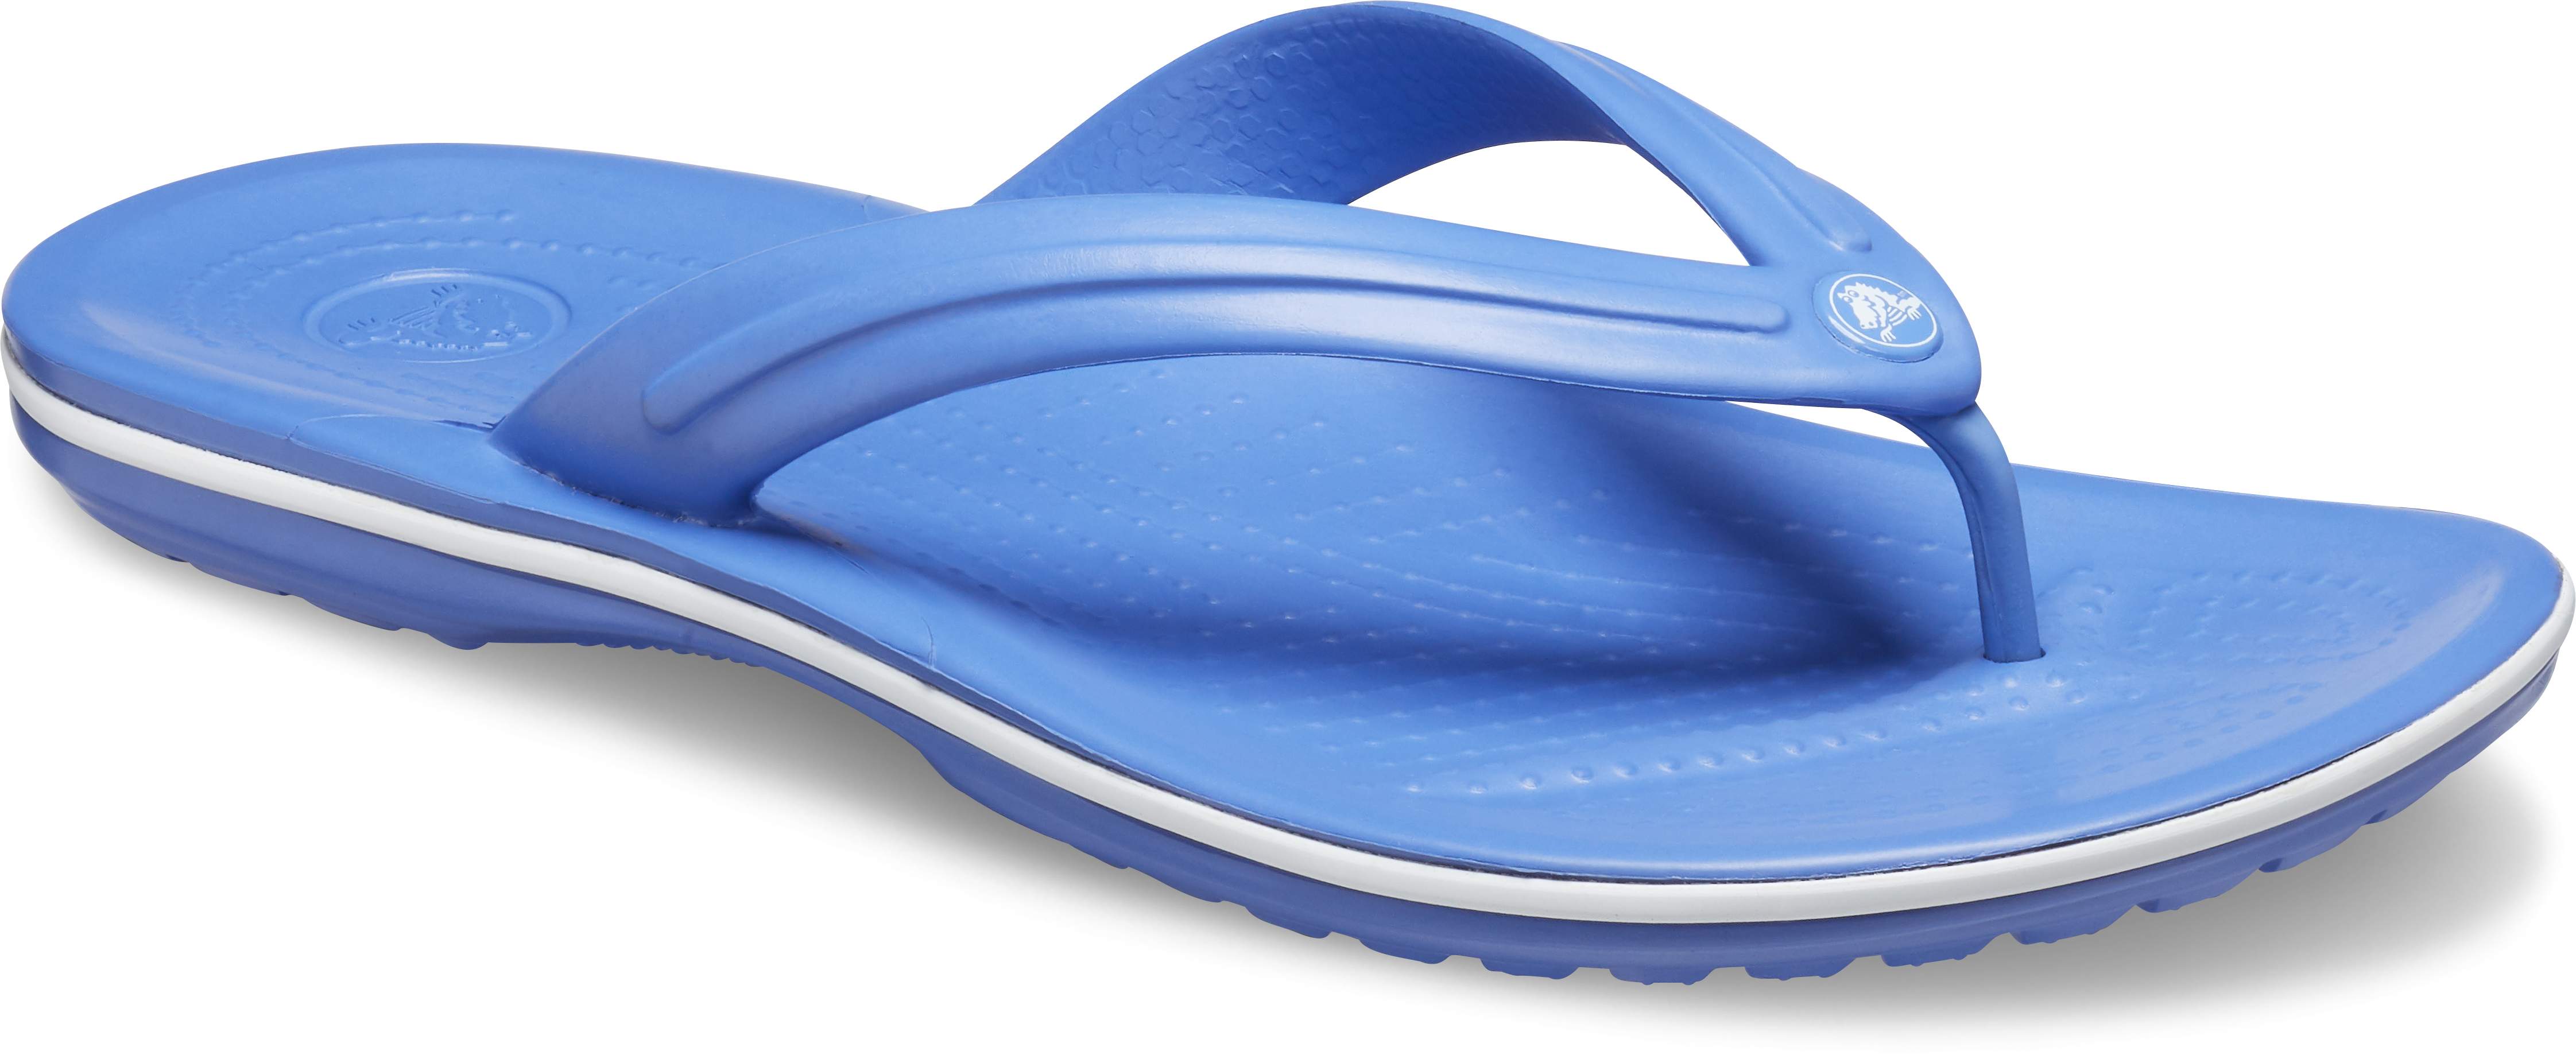 cobalt blue flip flops